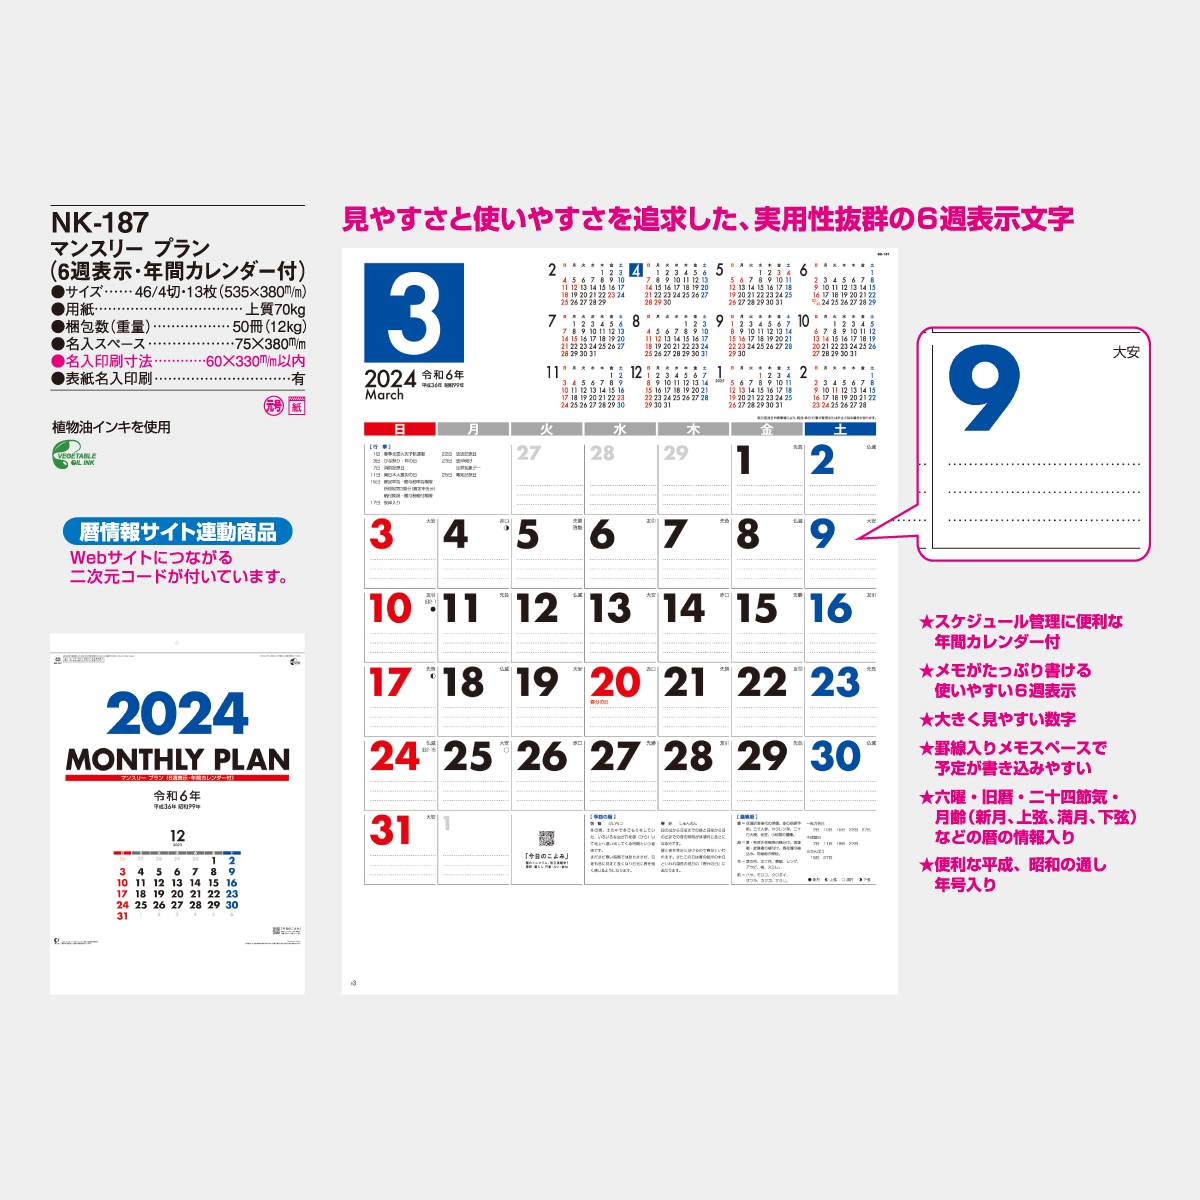 NK-187 マンスリー・プラン(6週表示・年間カレンダー付)